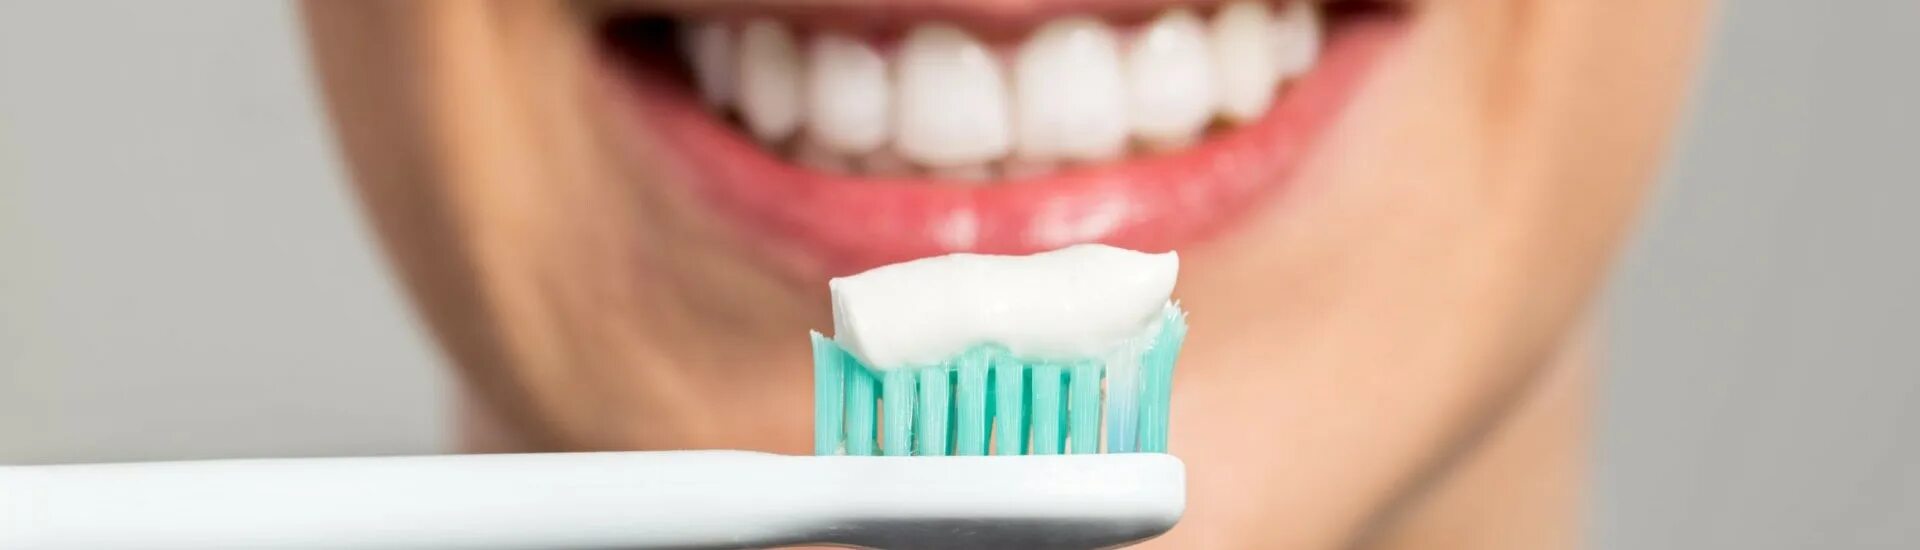 Состояние гигиены полости рта. Недостаточная гигиена полости рта. Зубная паста Аюрекс комплексная природная гигиена полости рта. Инфекция ротовой полости креатив. Гигиена полости рта мокап.